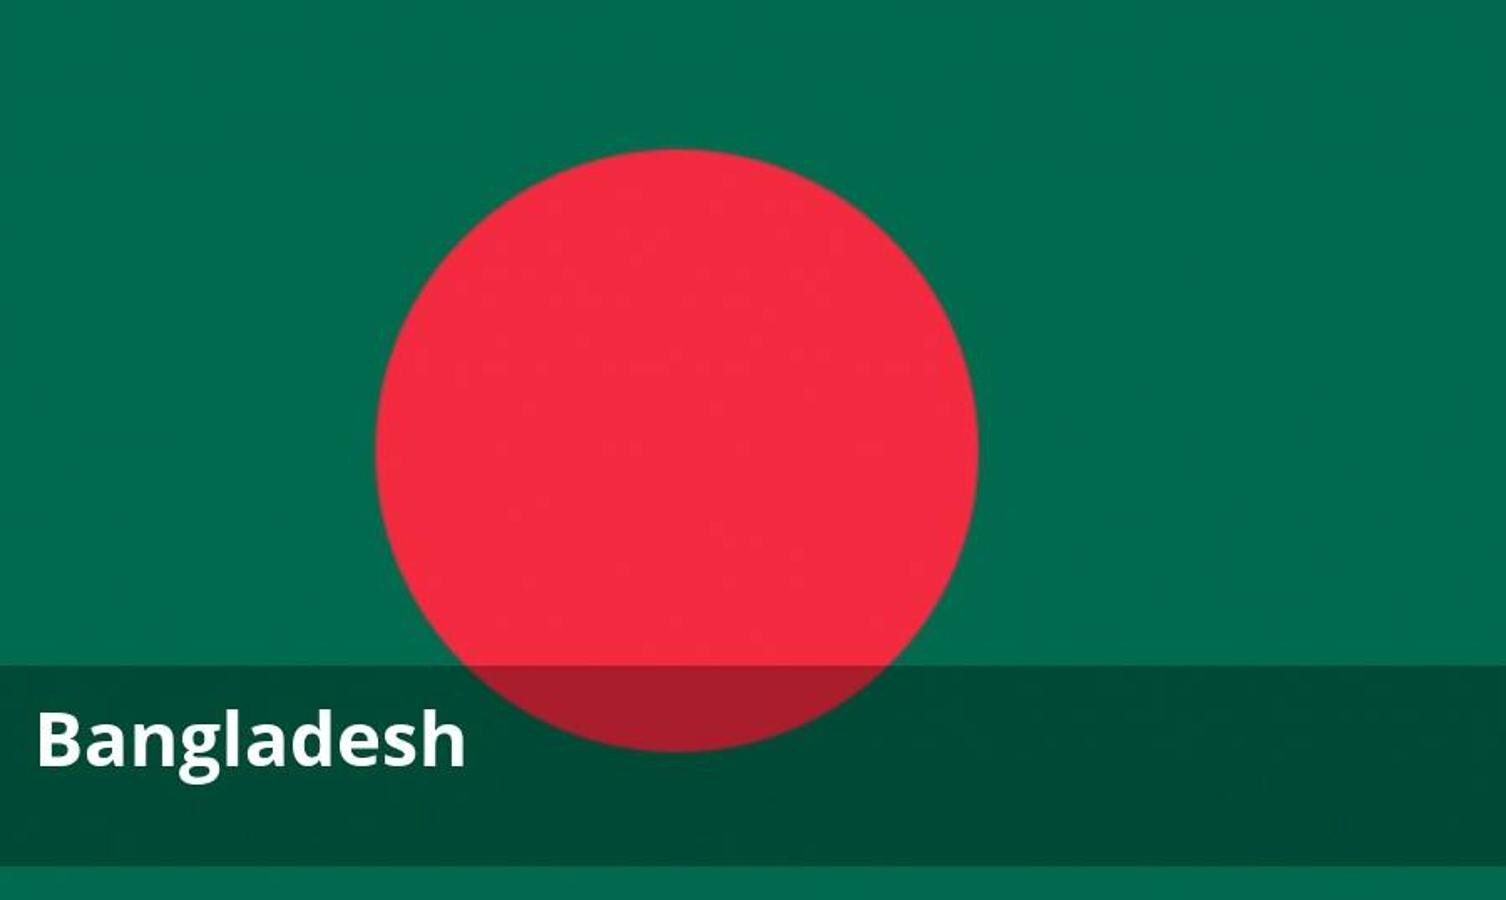 La amenaza terrorista contra intereses occidentales en Bangladesh por parte de grupos fundamentalistas islámicos es muy elevada.